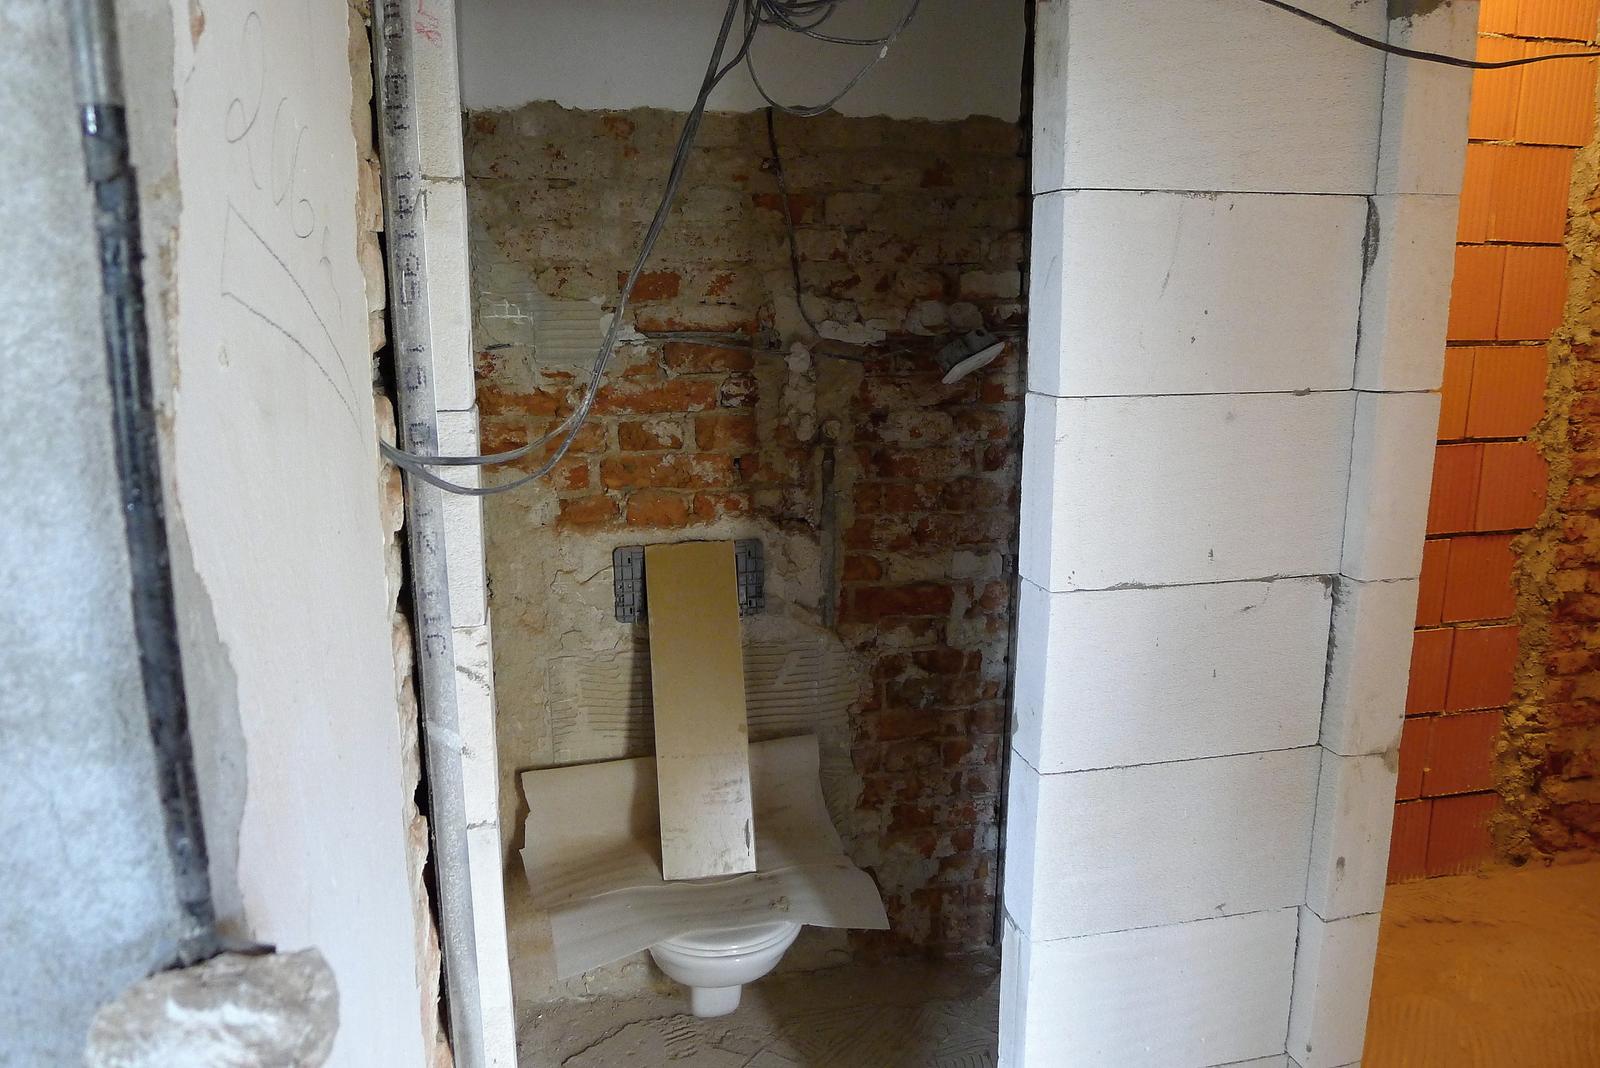 Rekonstrukce našeho domečku - a konečně se taky staví :o) záchod bude oddělen a z původní "nudle" koupelny se stane normální koupelna :o)